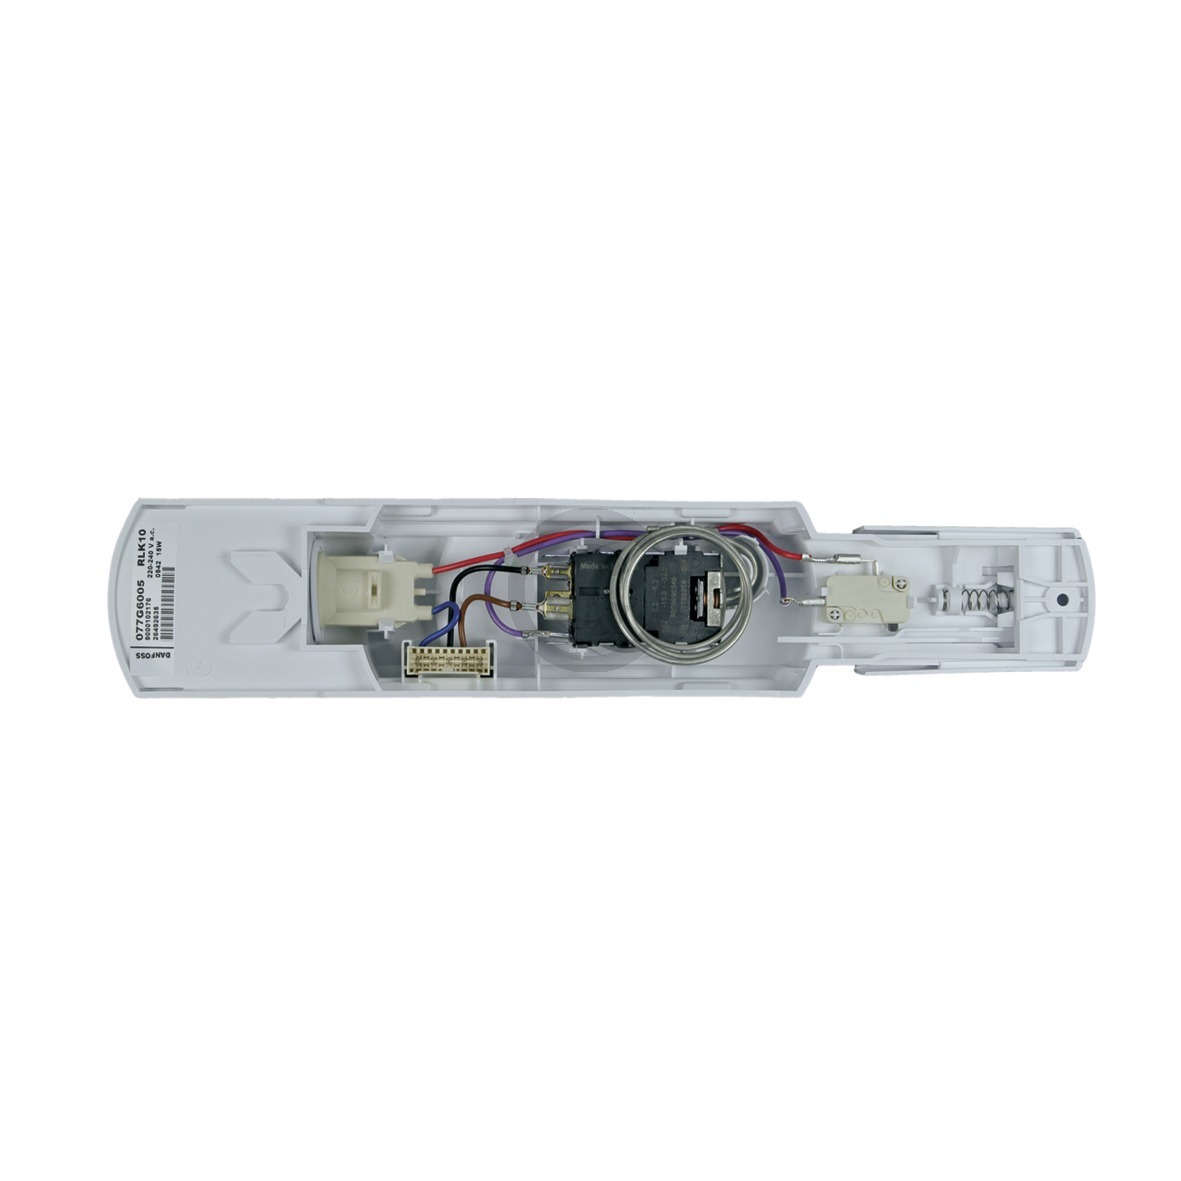 Bedieneinheit BOSCH 00499554 mit Thermostat Lampe etc für Kühlschrank